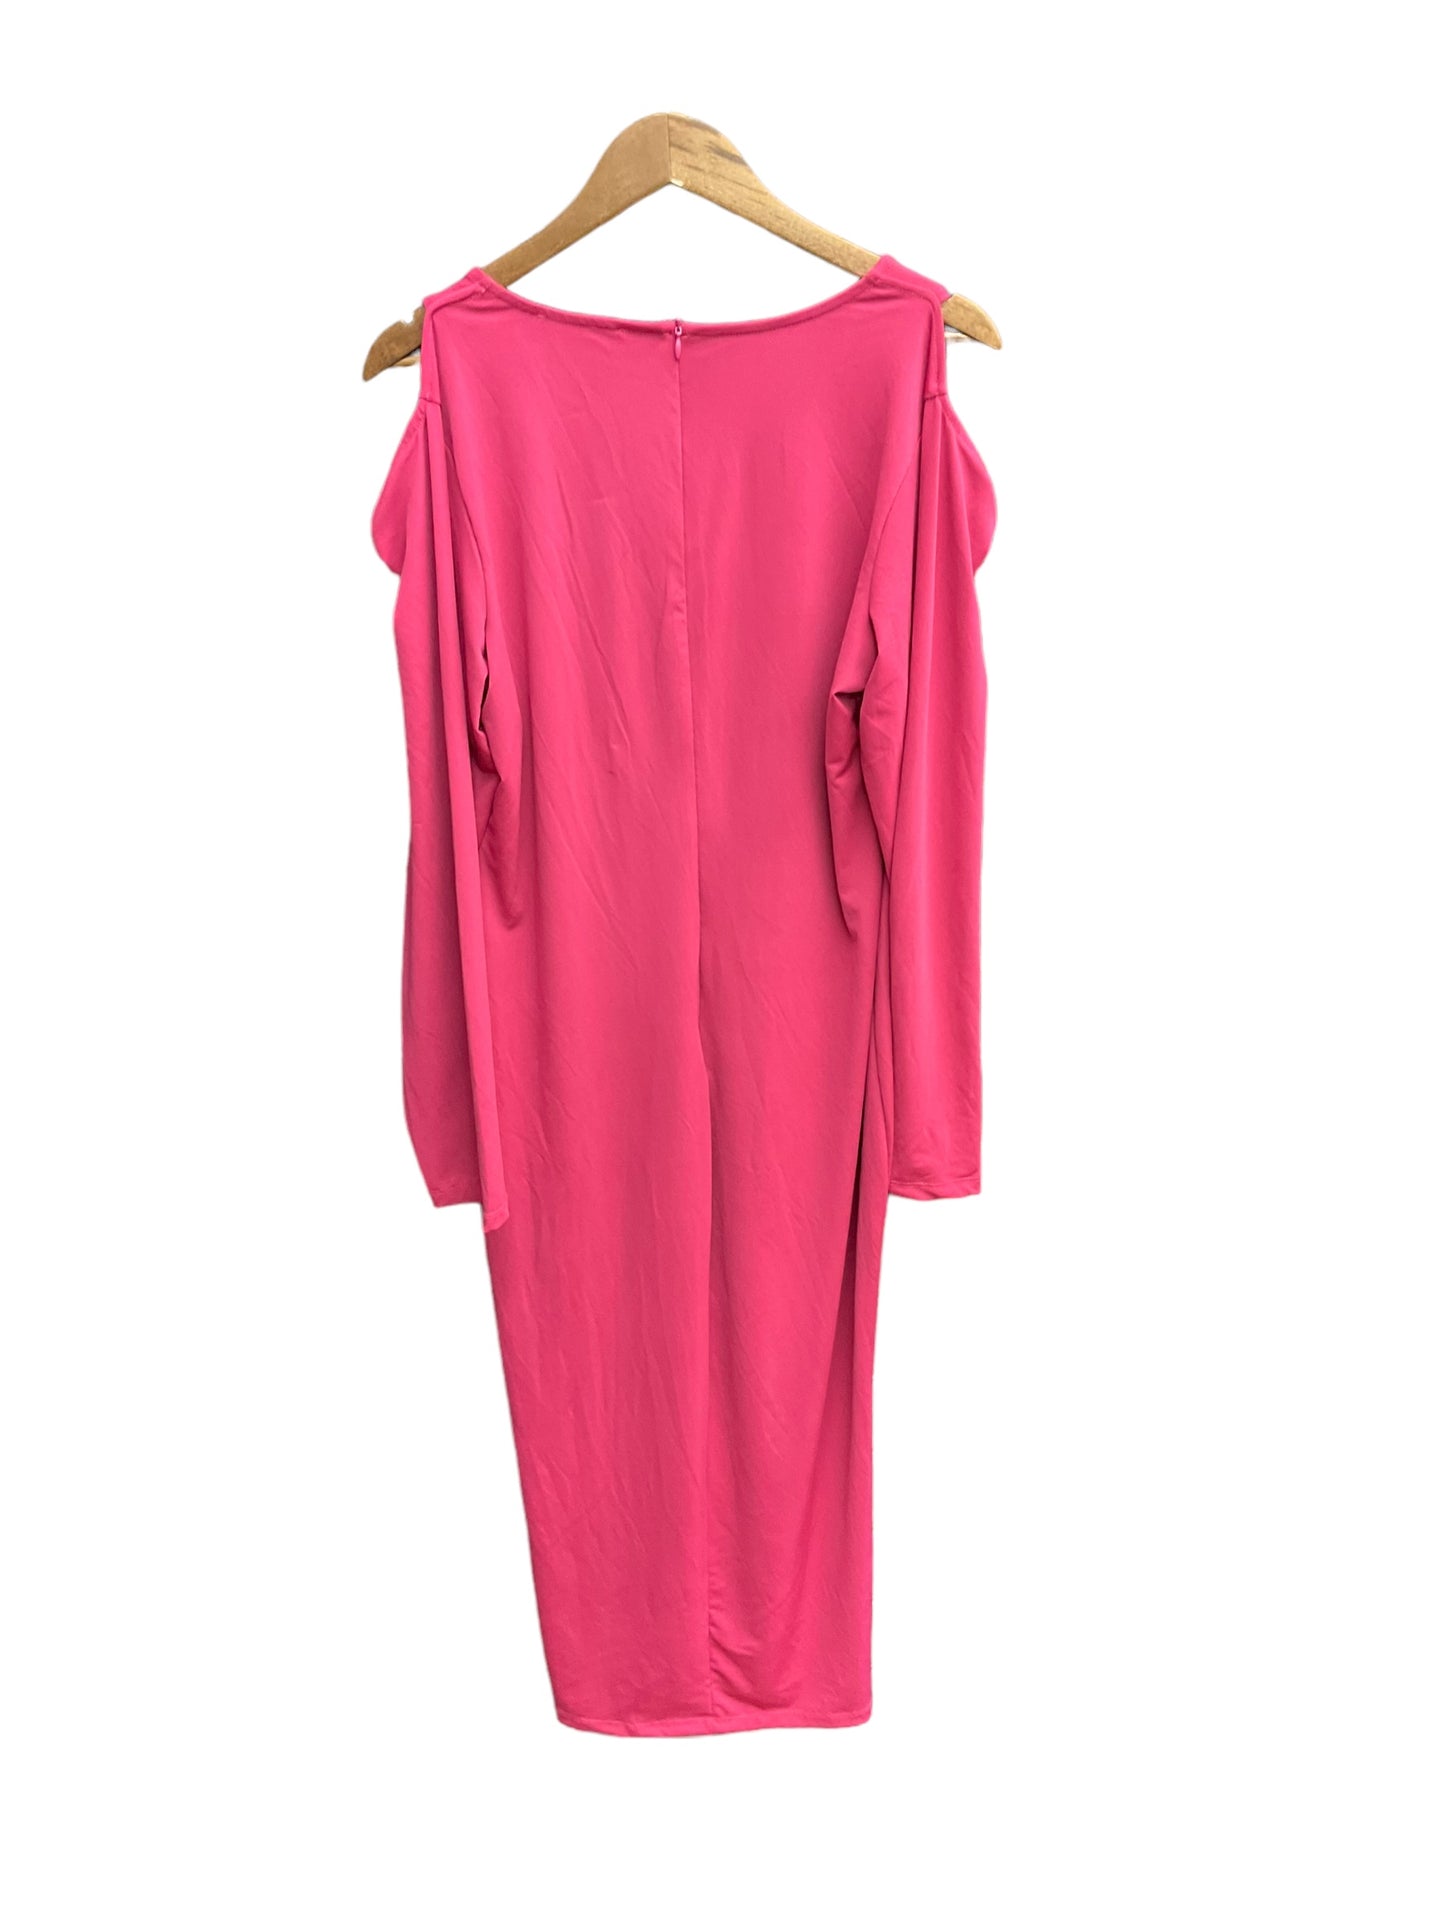 Dress Casual Maxi By Ashley Stewart  Size: Xl